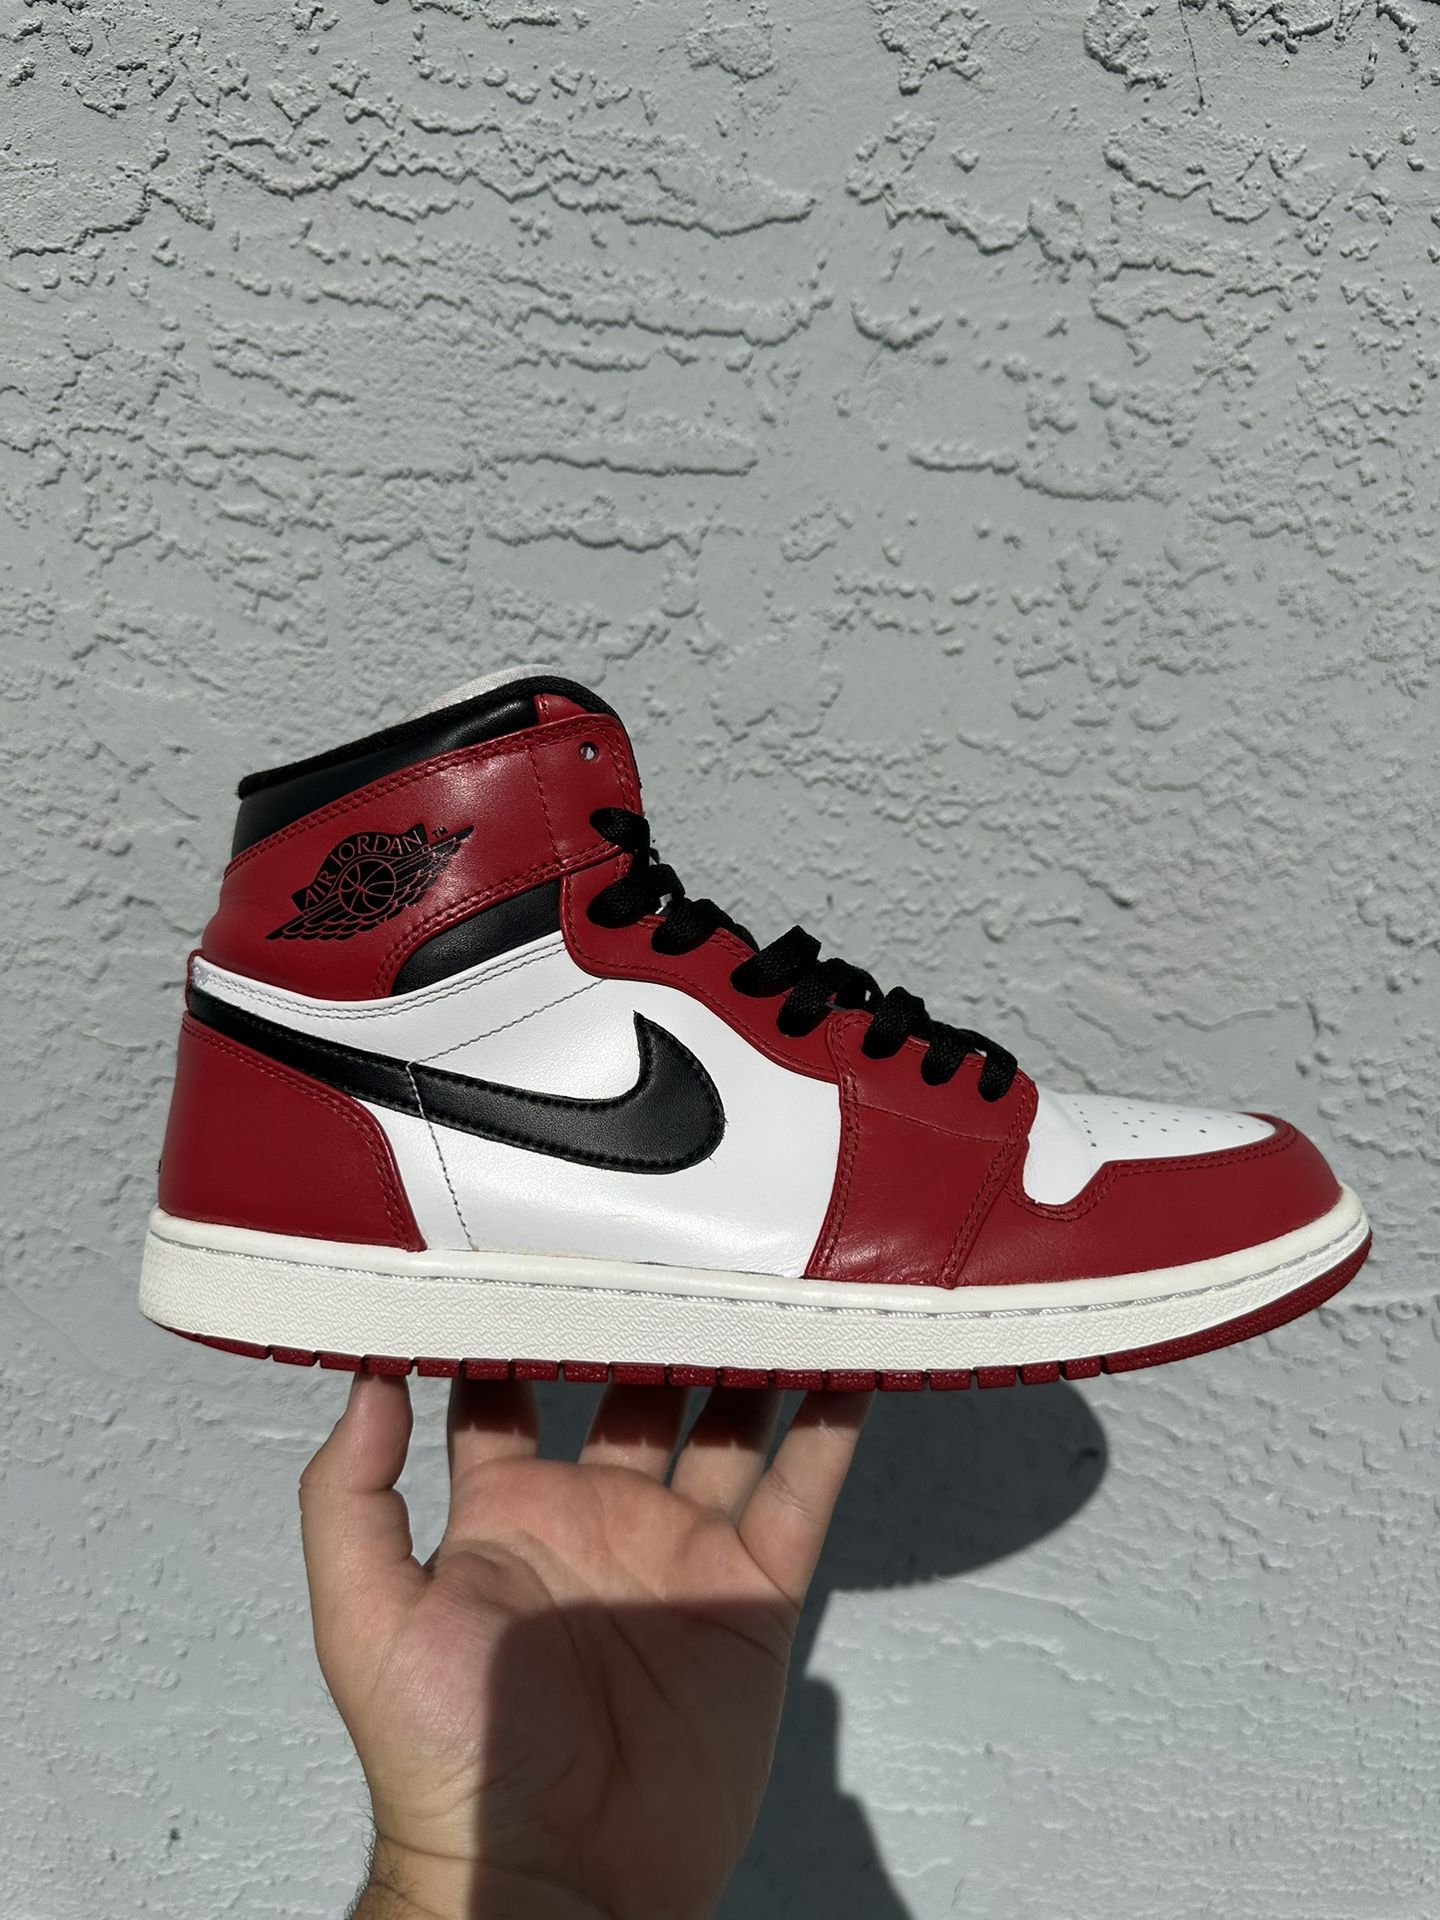 2013 Jordan 1 Chicagos Size 11 